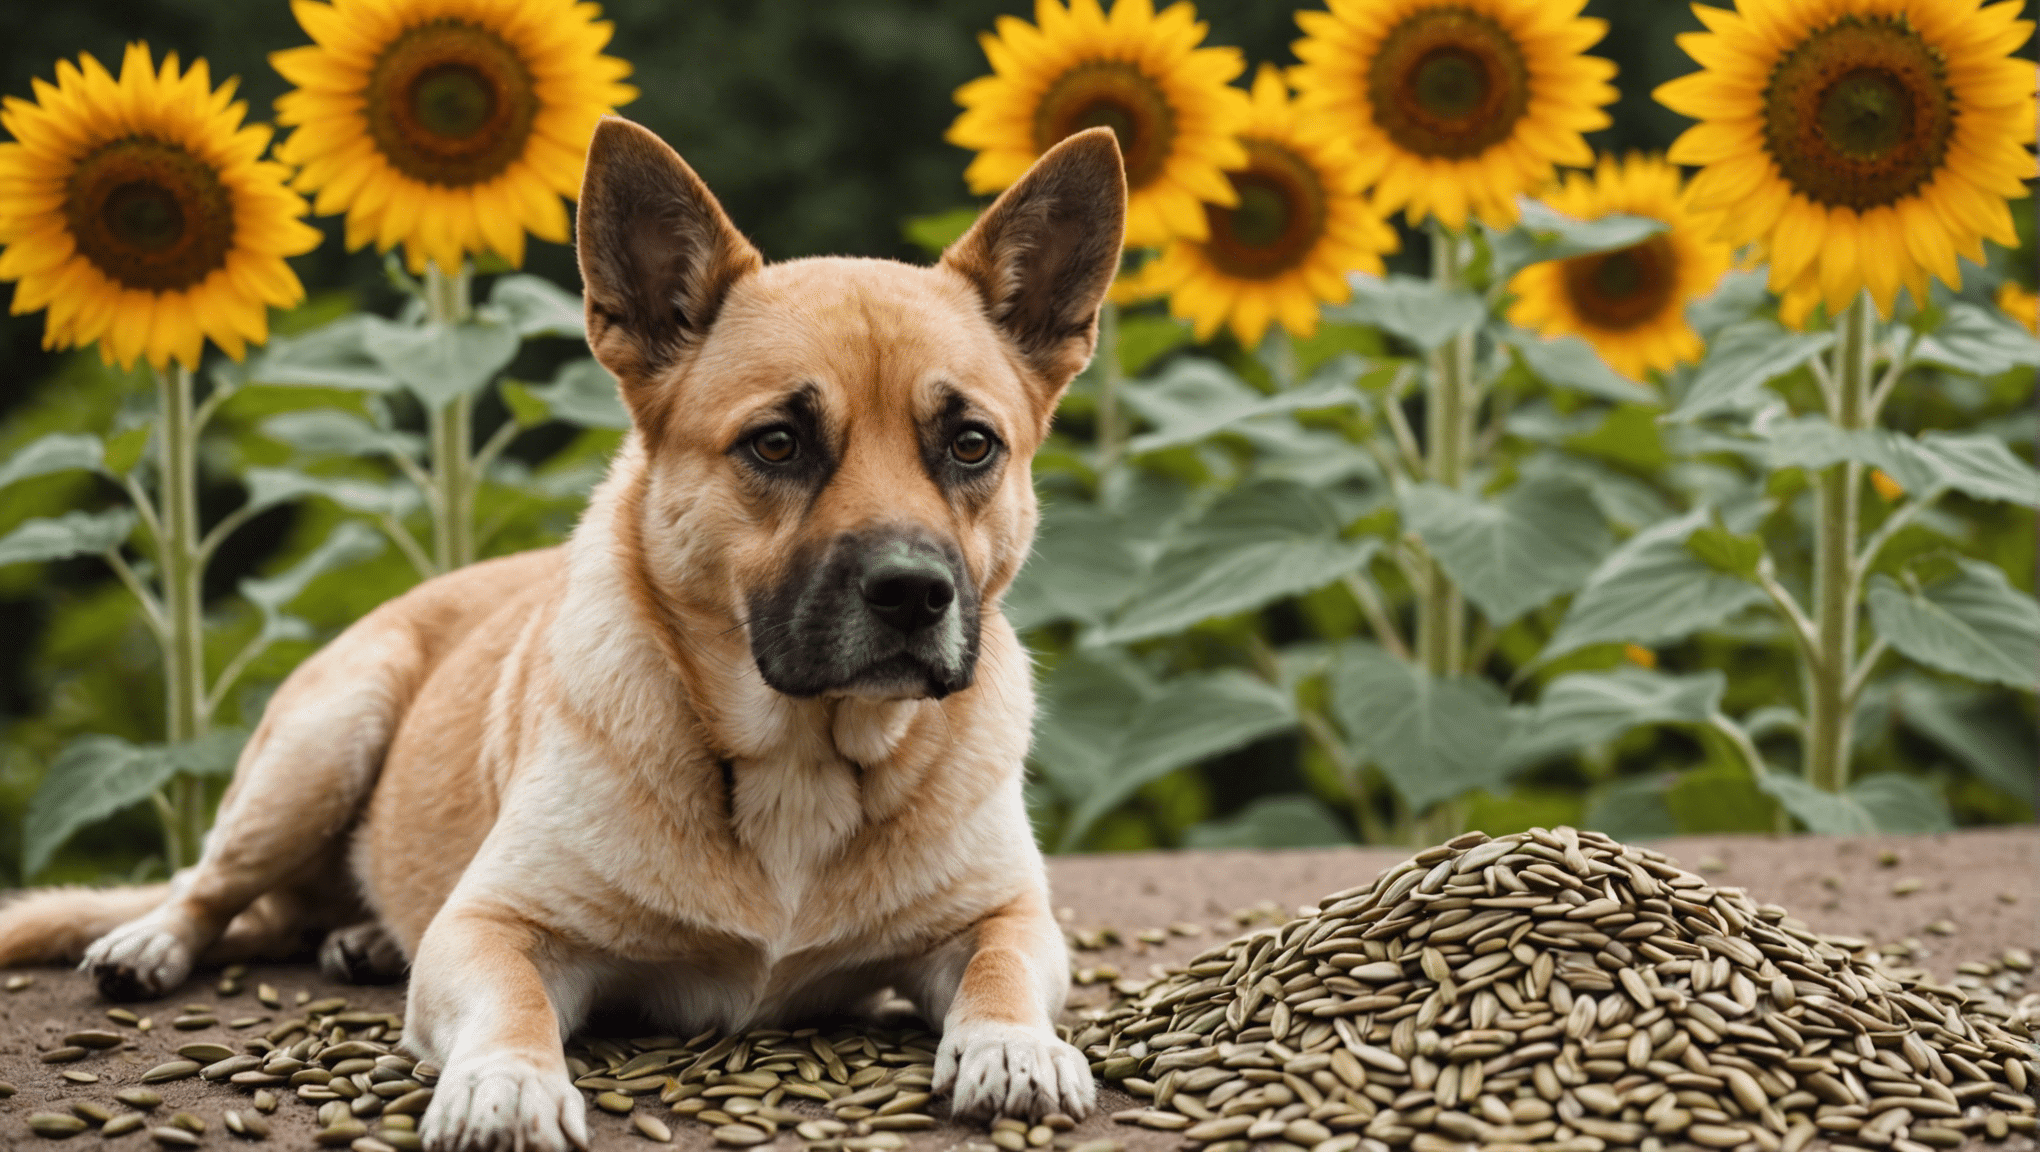 zistite, či sú slnečnicové semienka pre psov bezpečné a dozviete sa o možných rizikách a výhodách pre vášho psieho spoločníka.